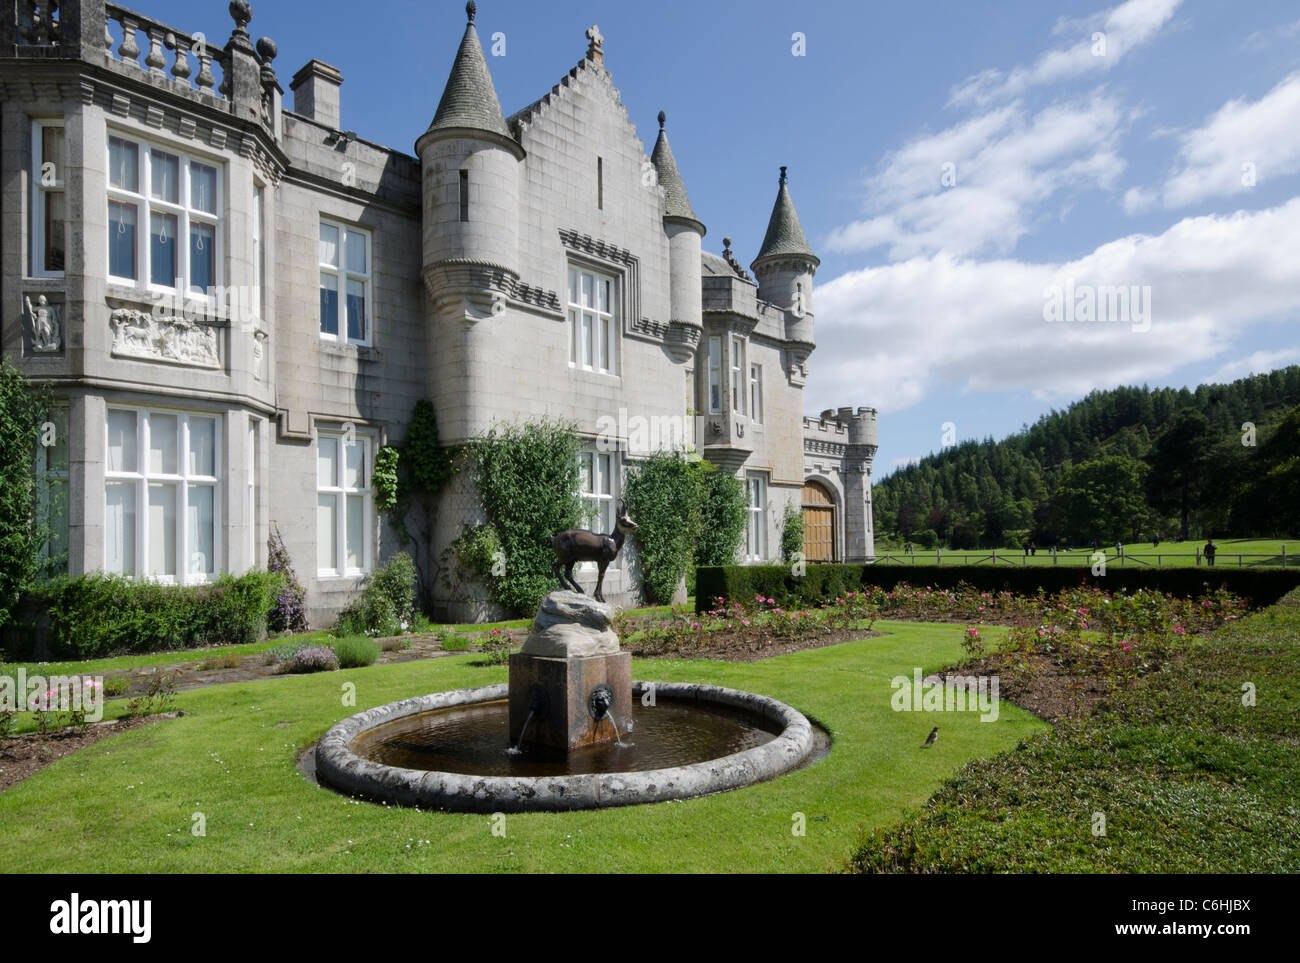 El castillo de Balmoral Royal Deeside- Queen's residencia vista del castillo desde los jardines formales con ciervos fuente en primer plano Foto de stock